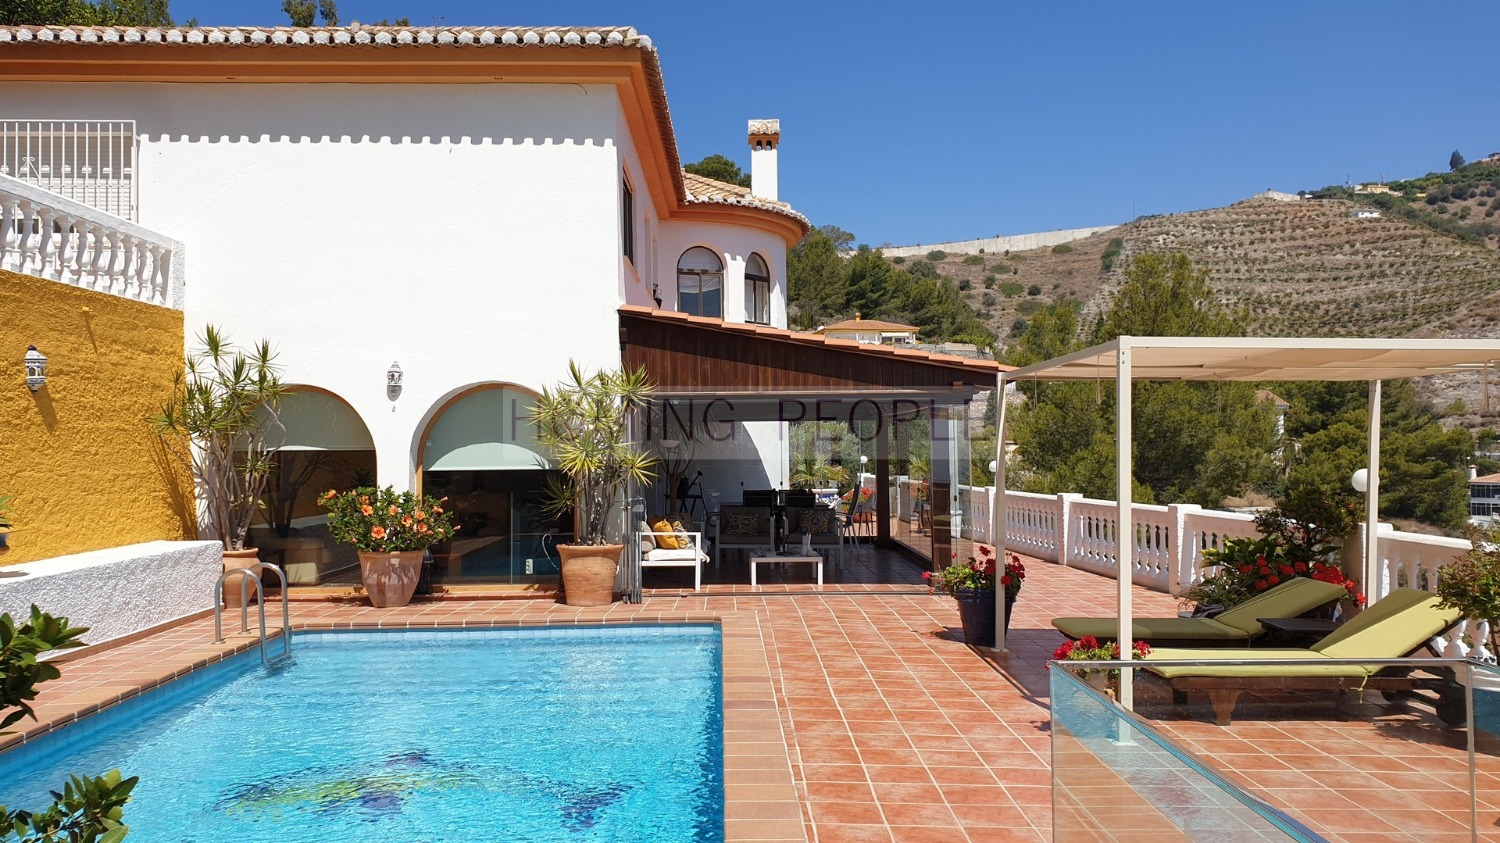 VENDIDO_Villa con piscina y vistas al mar, situado en zona residencial muy apreciada